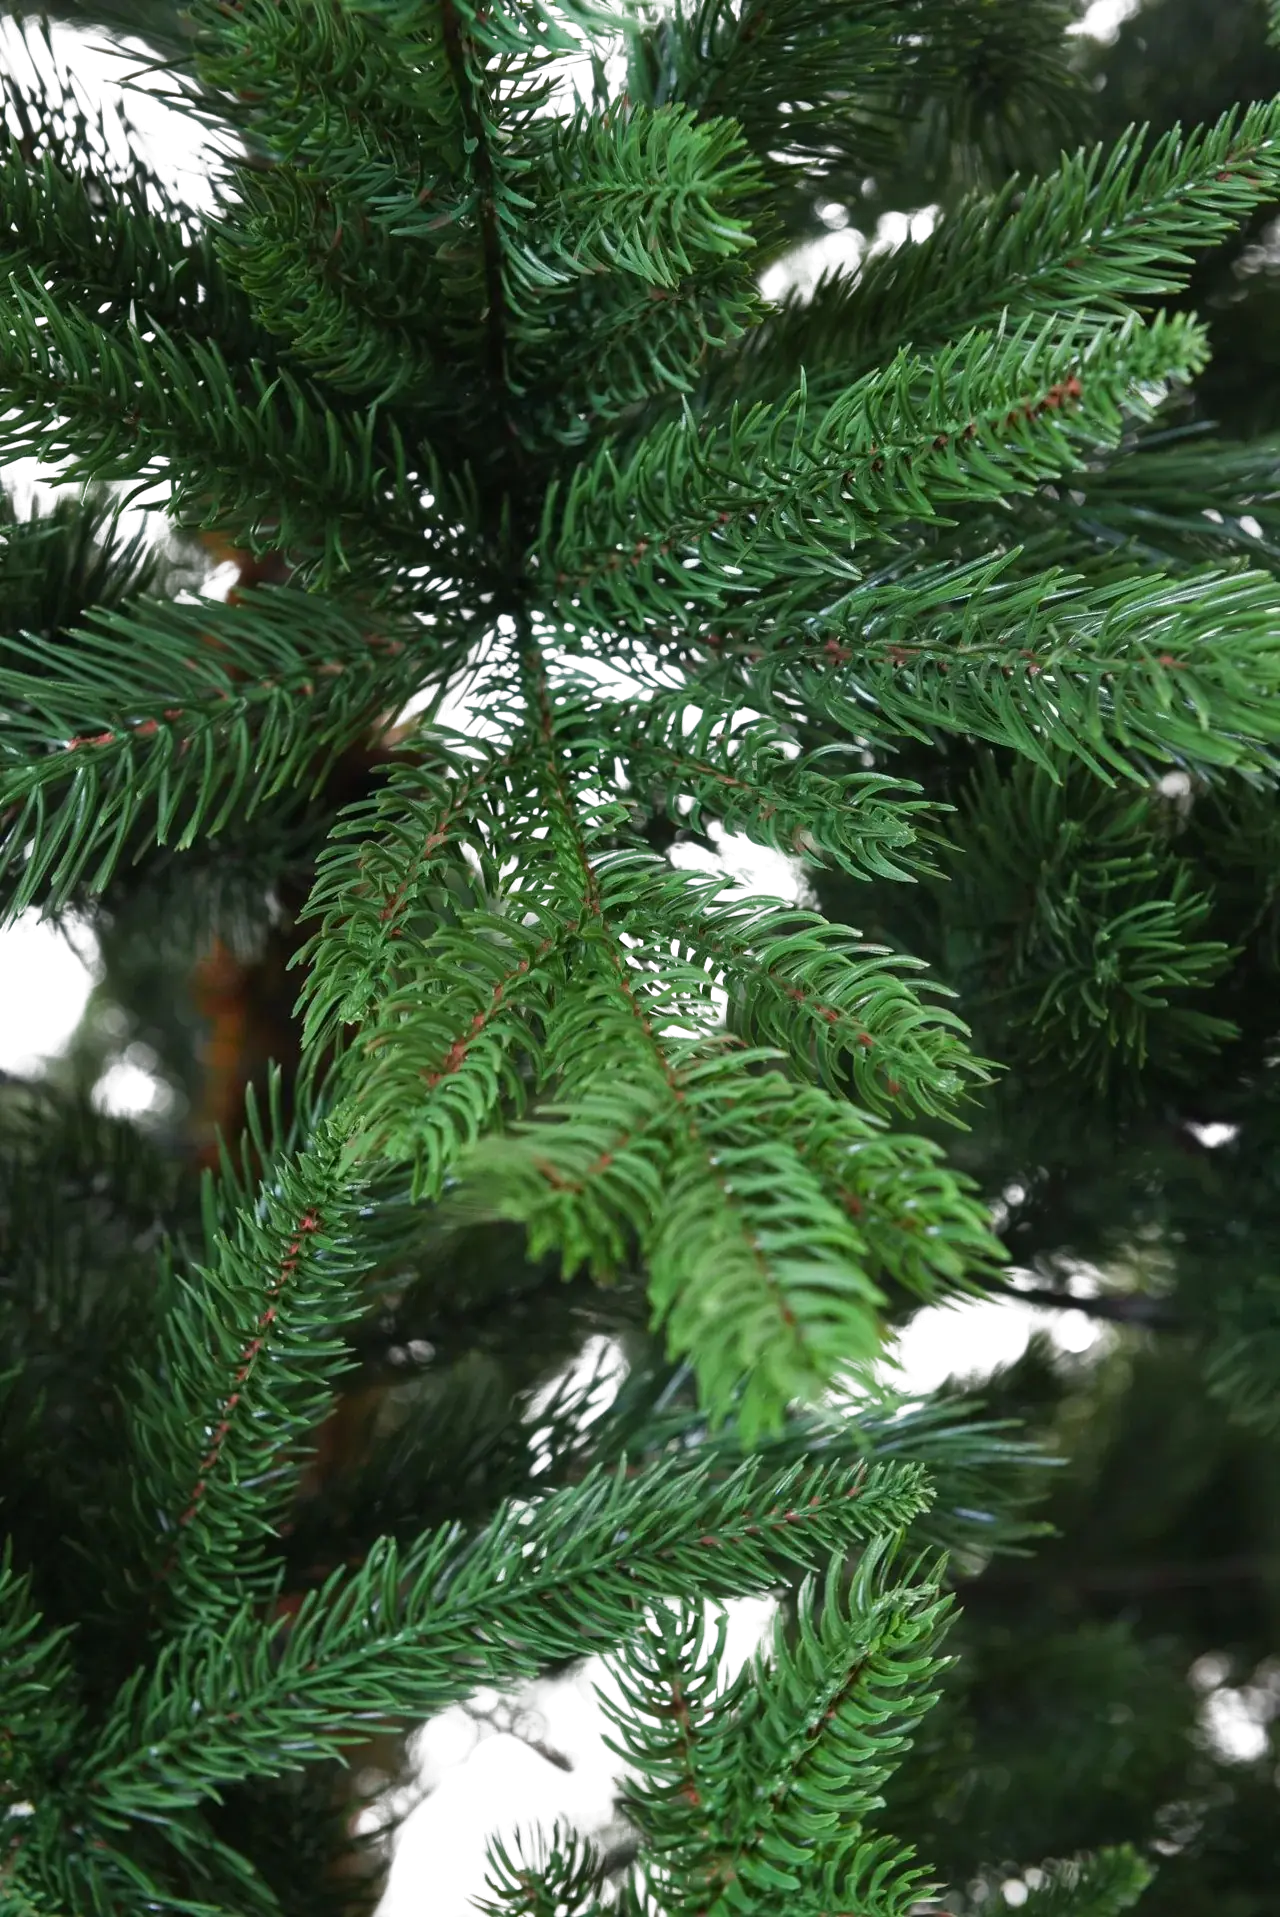 Künstlicher Weihnachtsbaum - Lucian | 210 cm